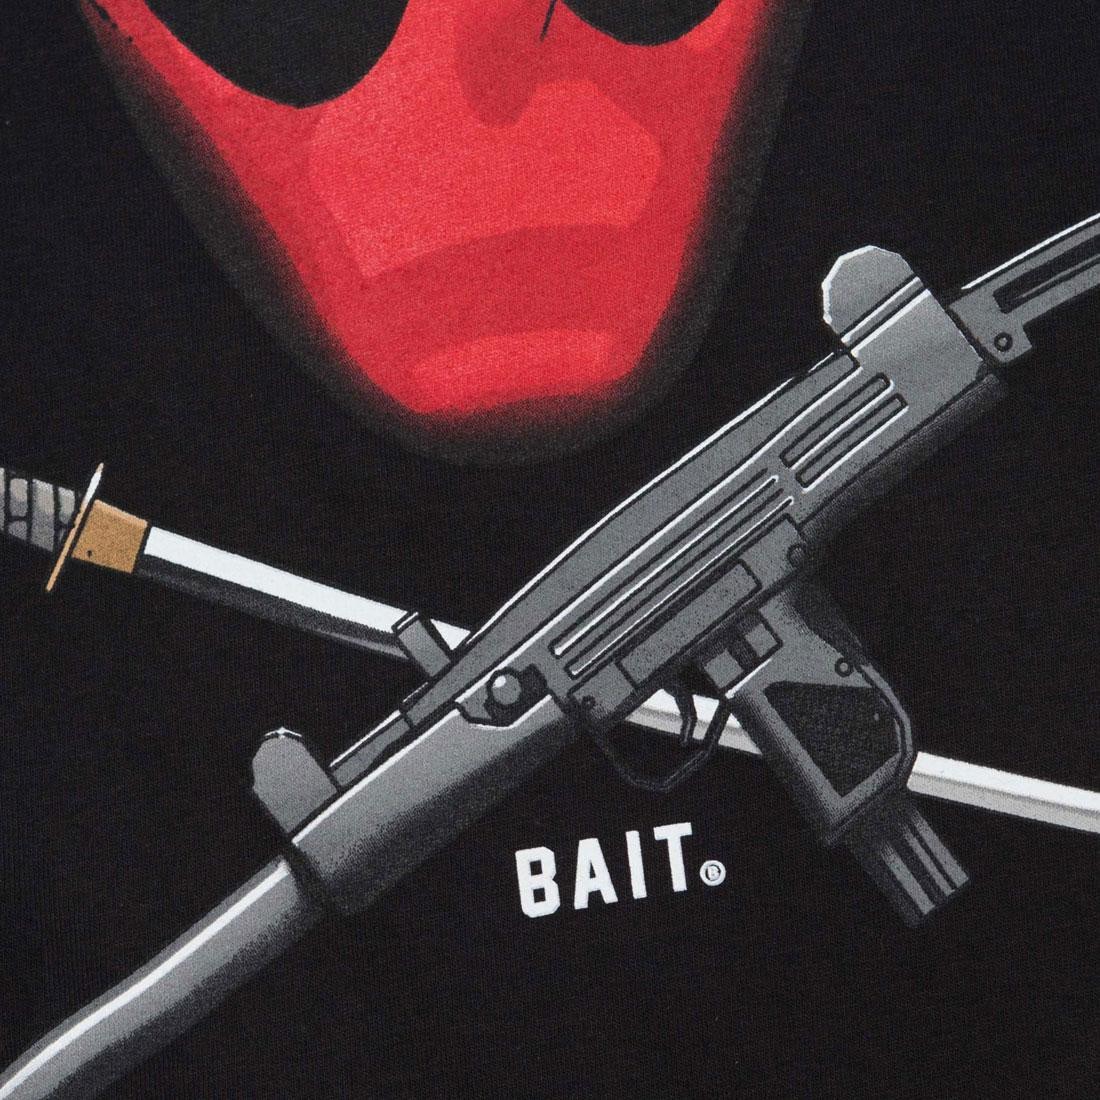 Bait ベイト Bait Deadpool 好評予約受付中 こちらは Ratata T という名前 のアイテム おそらく銃の音をユニークなデップーらしく表現しています 海賊のようなかっこいいグラフィックも必見 予約はこちらから T Co Yaku1ajkgz